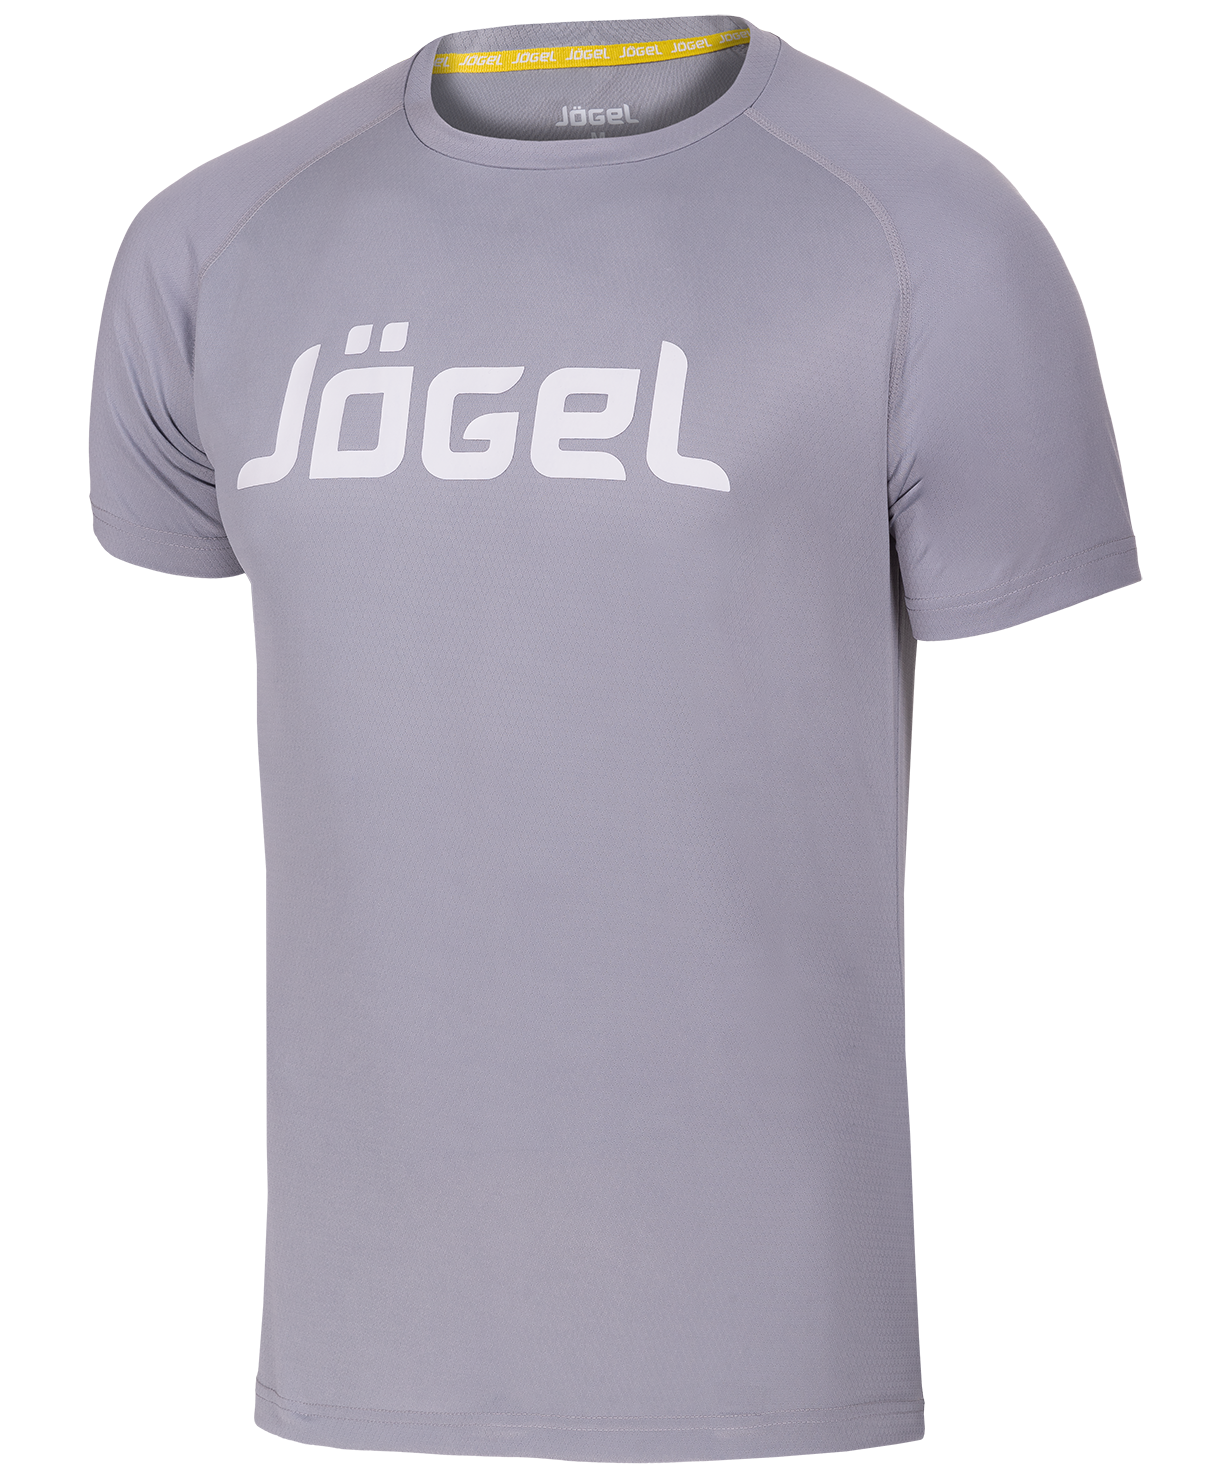 Купить Футболка тренировочная Jögel JTT-1041-081, серый/белый, р. 164, Jogel,